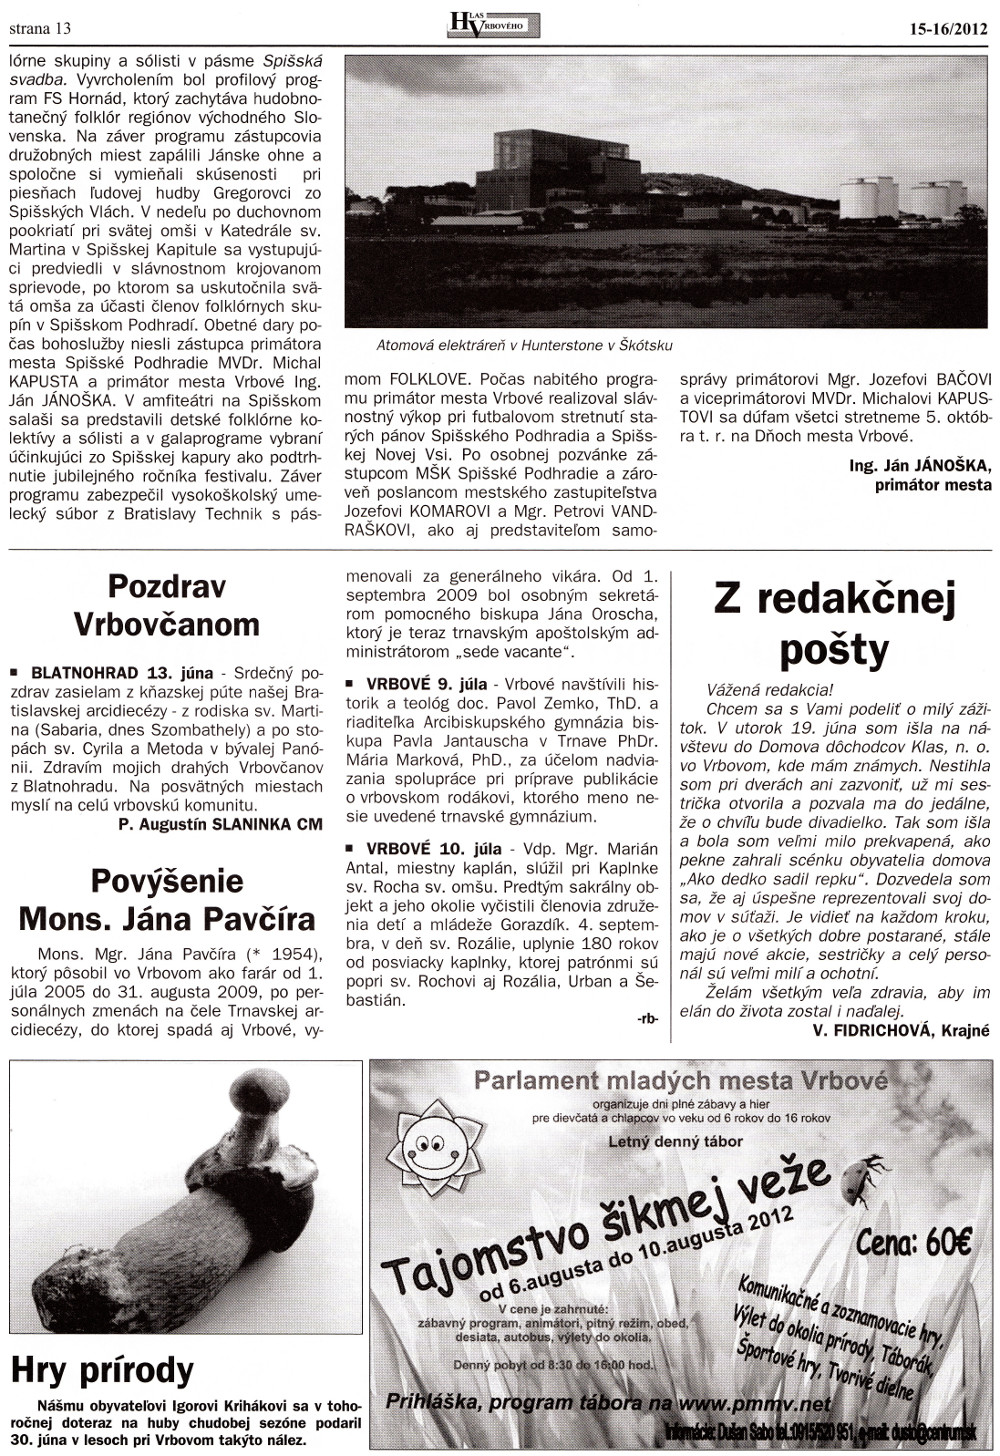 Hlas Vrbového 15-16/2012, strana 13